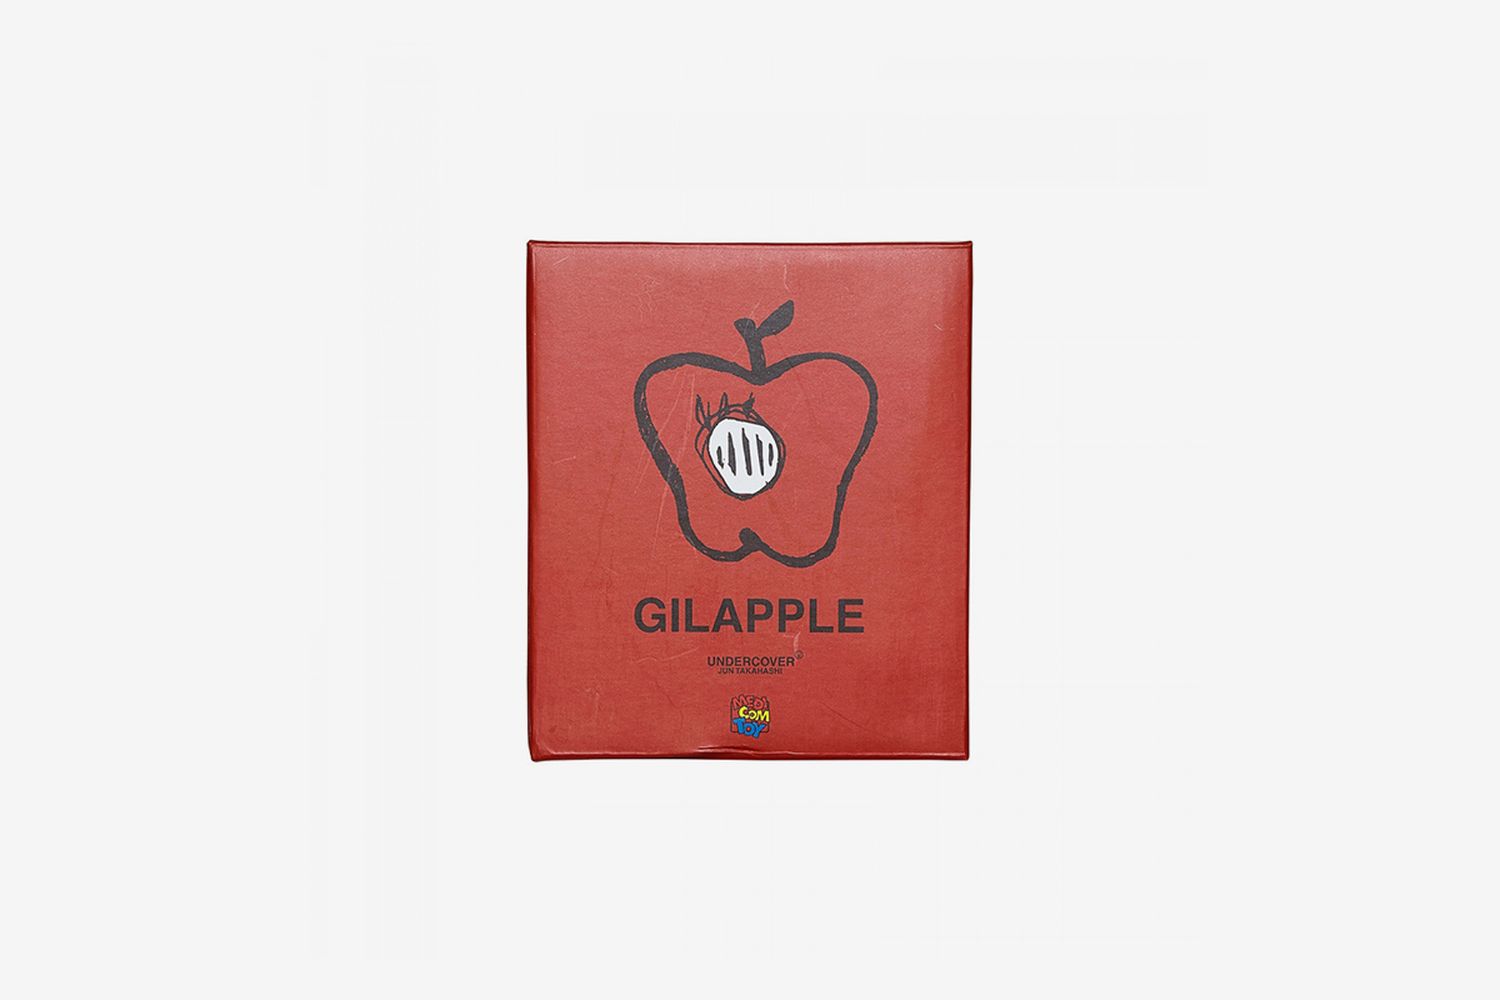 Gilapple